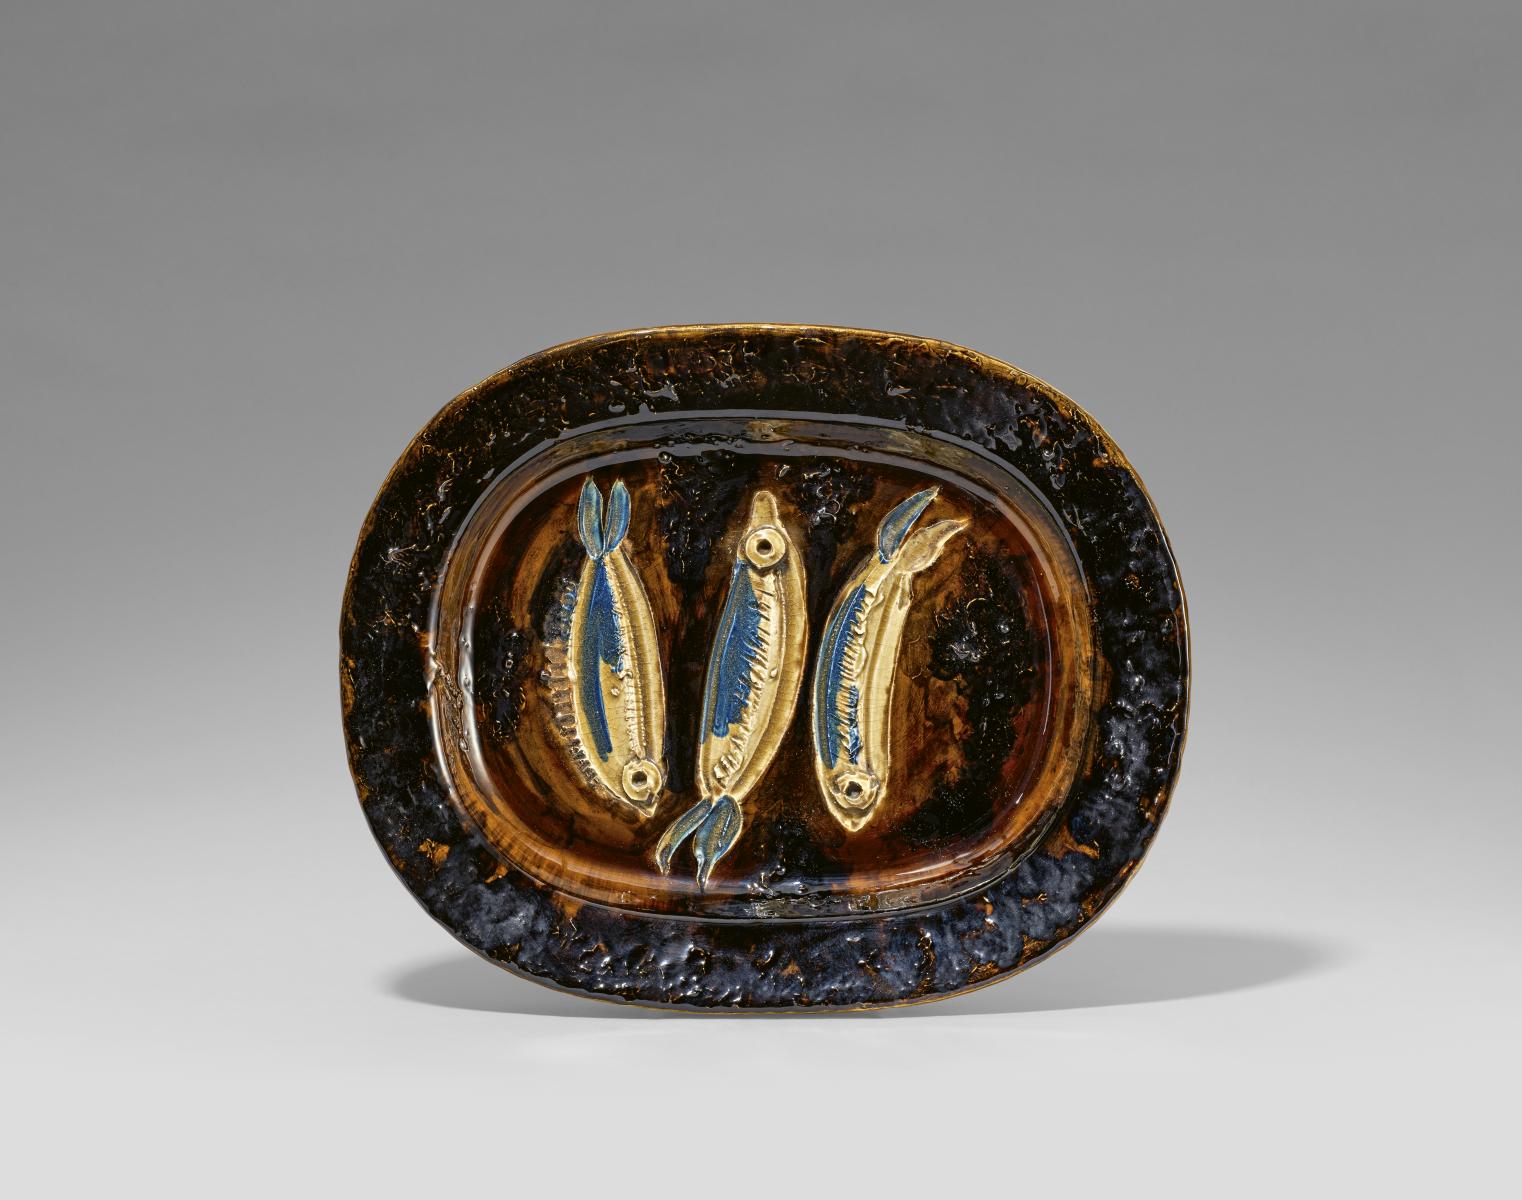 Pablo Picasso: Three sardines aus unserer Rubrik: Moderne Objekte.